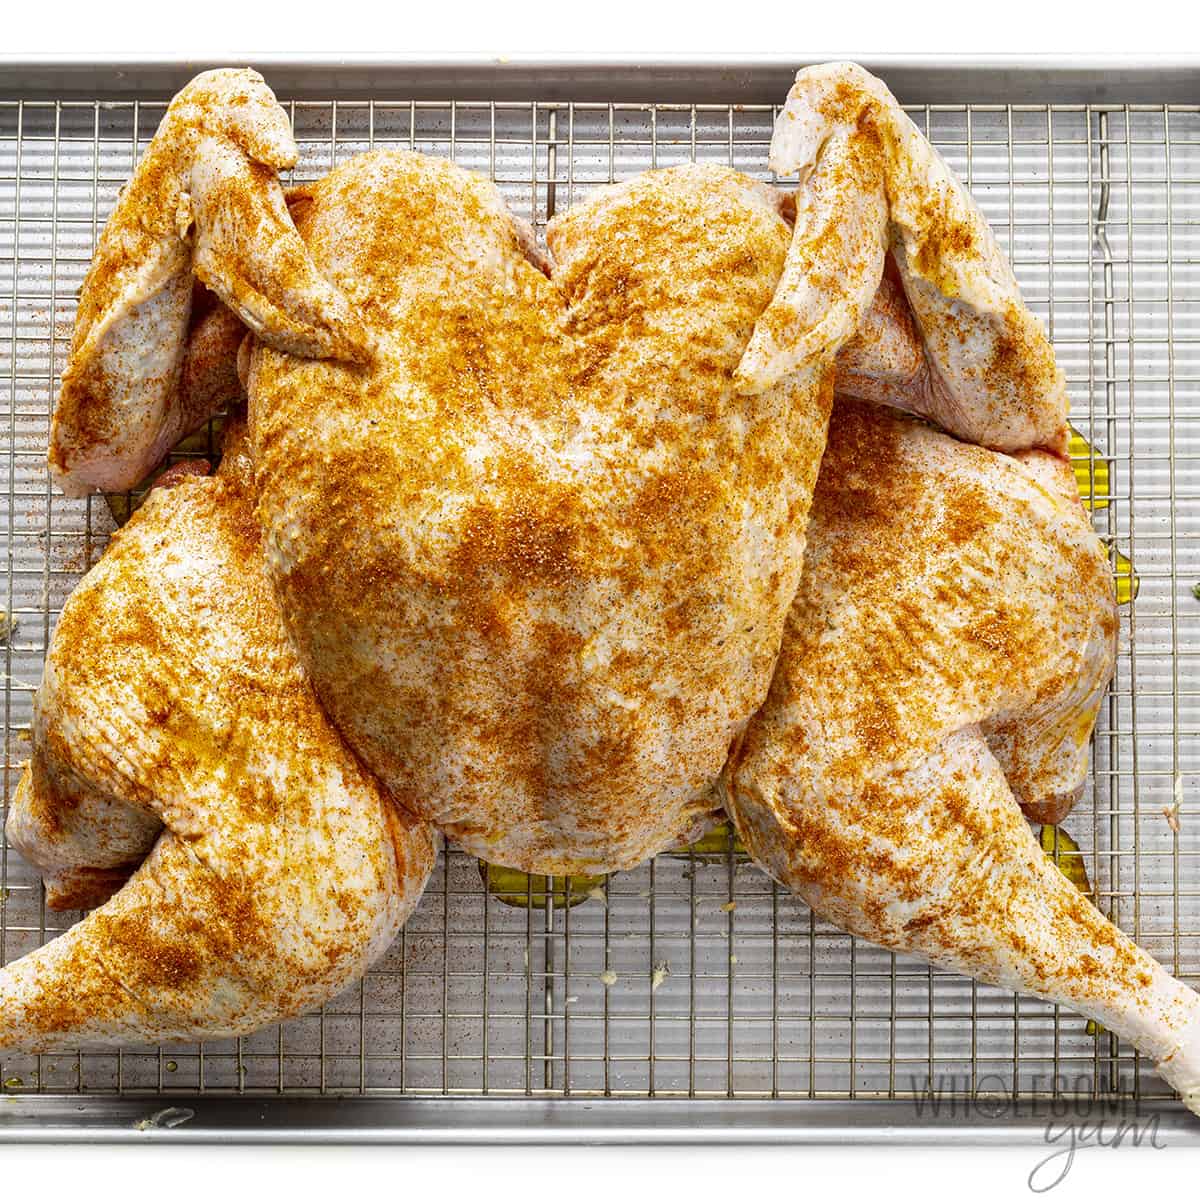 Seasoned spatchcock turkey on roasting pan